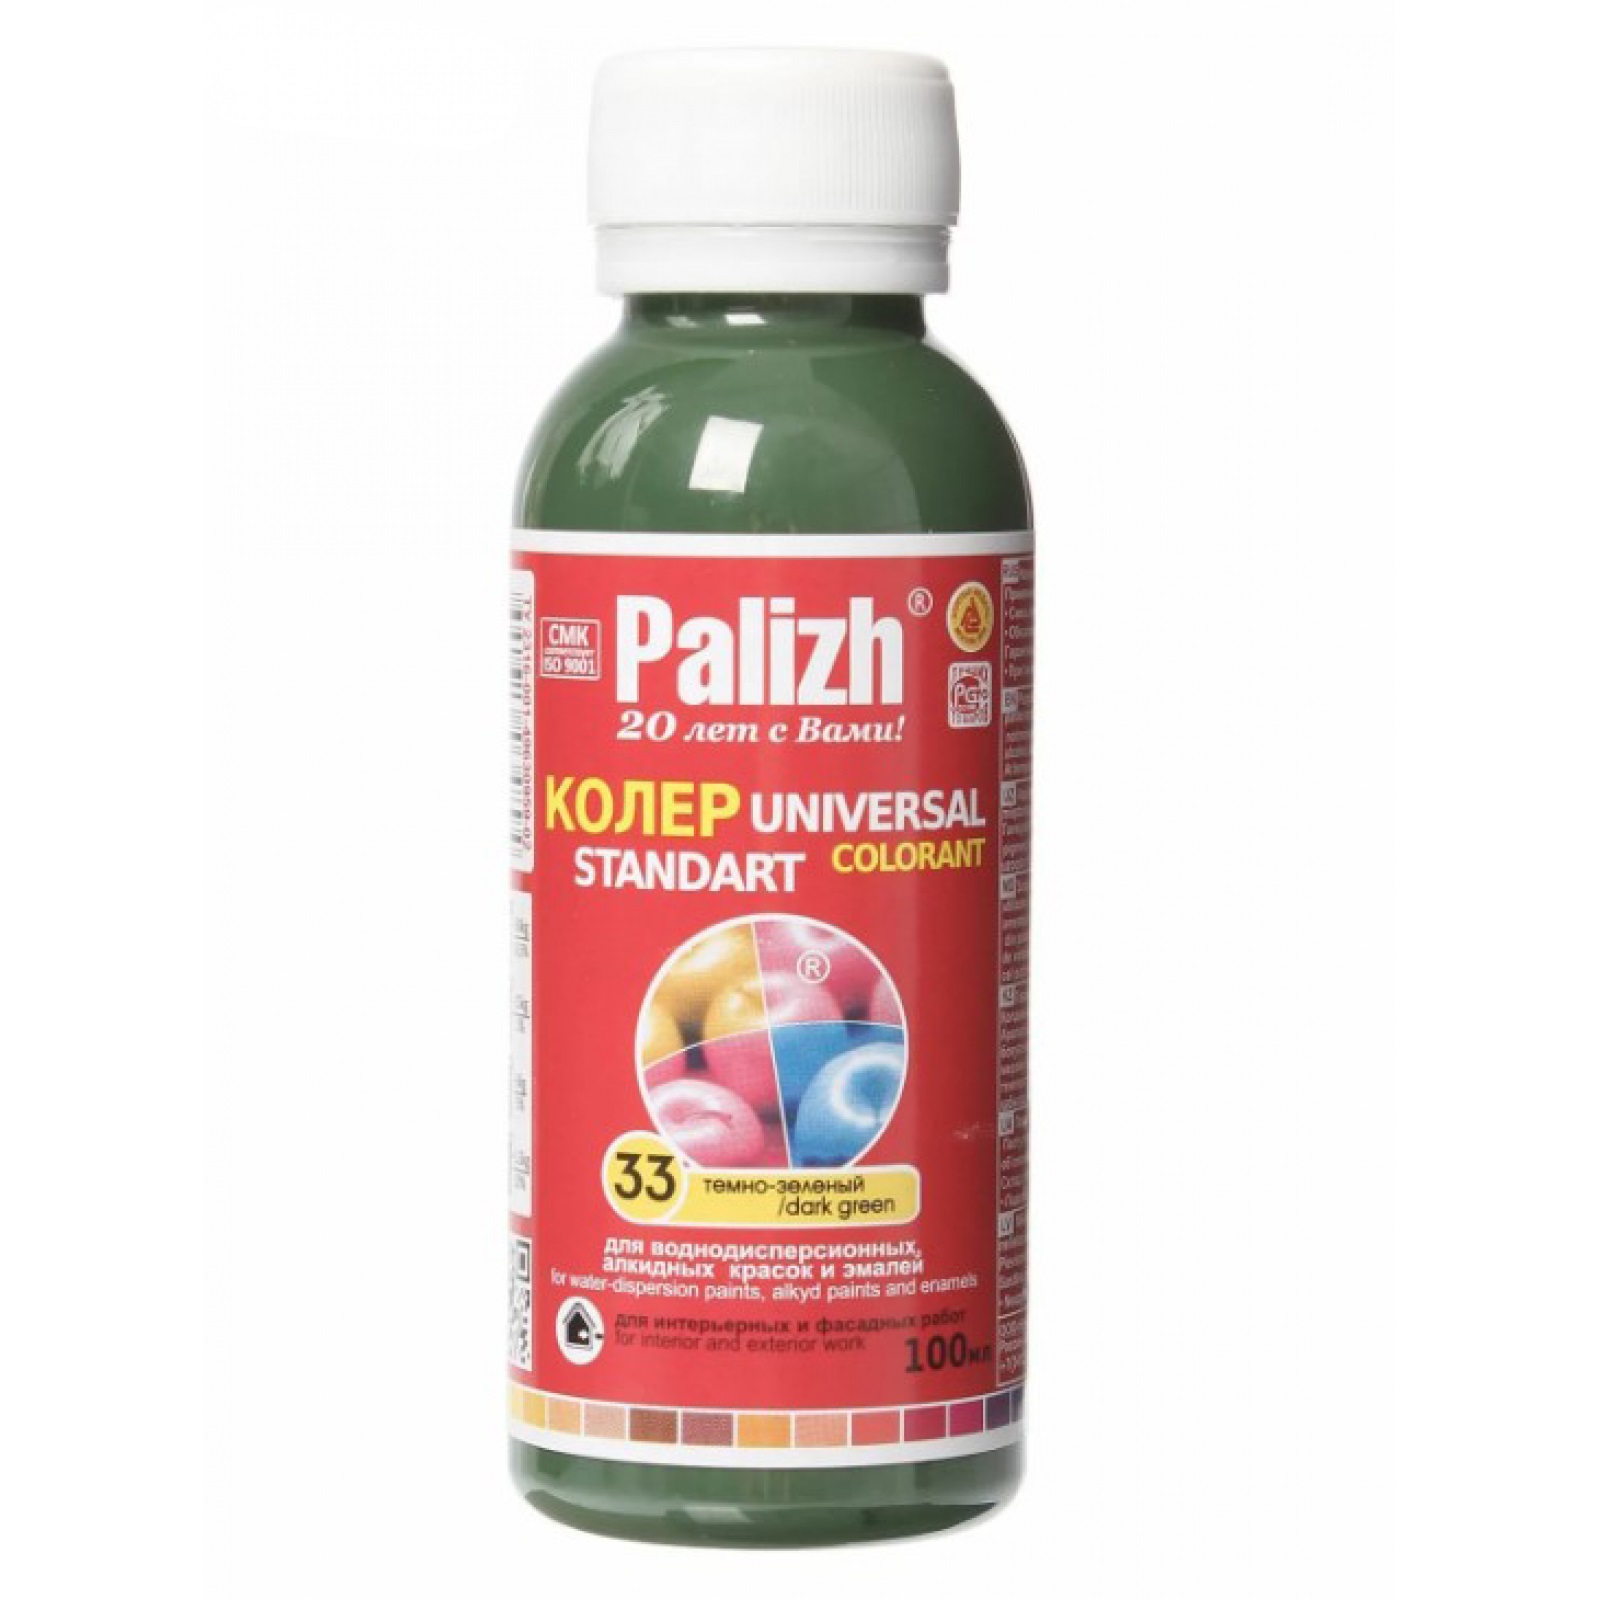 Паста универсальная колеровочная Palizh темно-зеленый - 100 мл